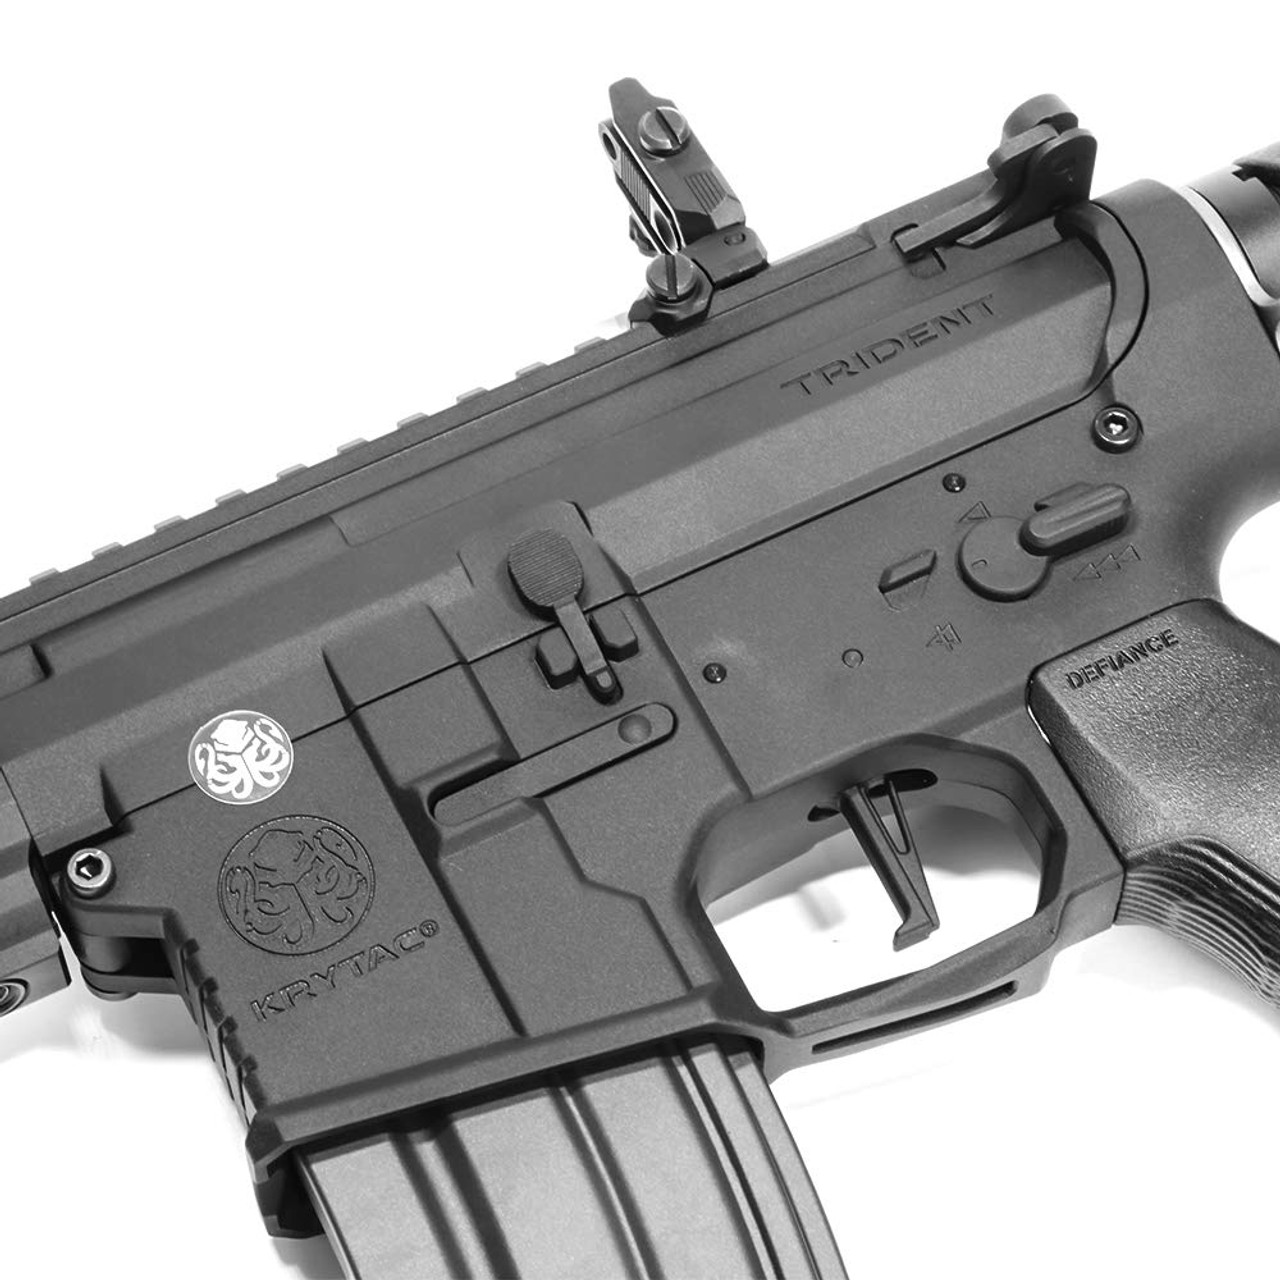 Trigger of KRYTAC TRIDENT MKIISPR-M Airsoft Rifle gun